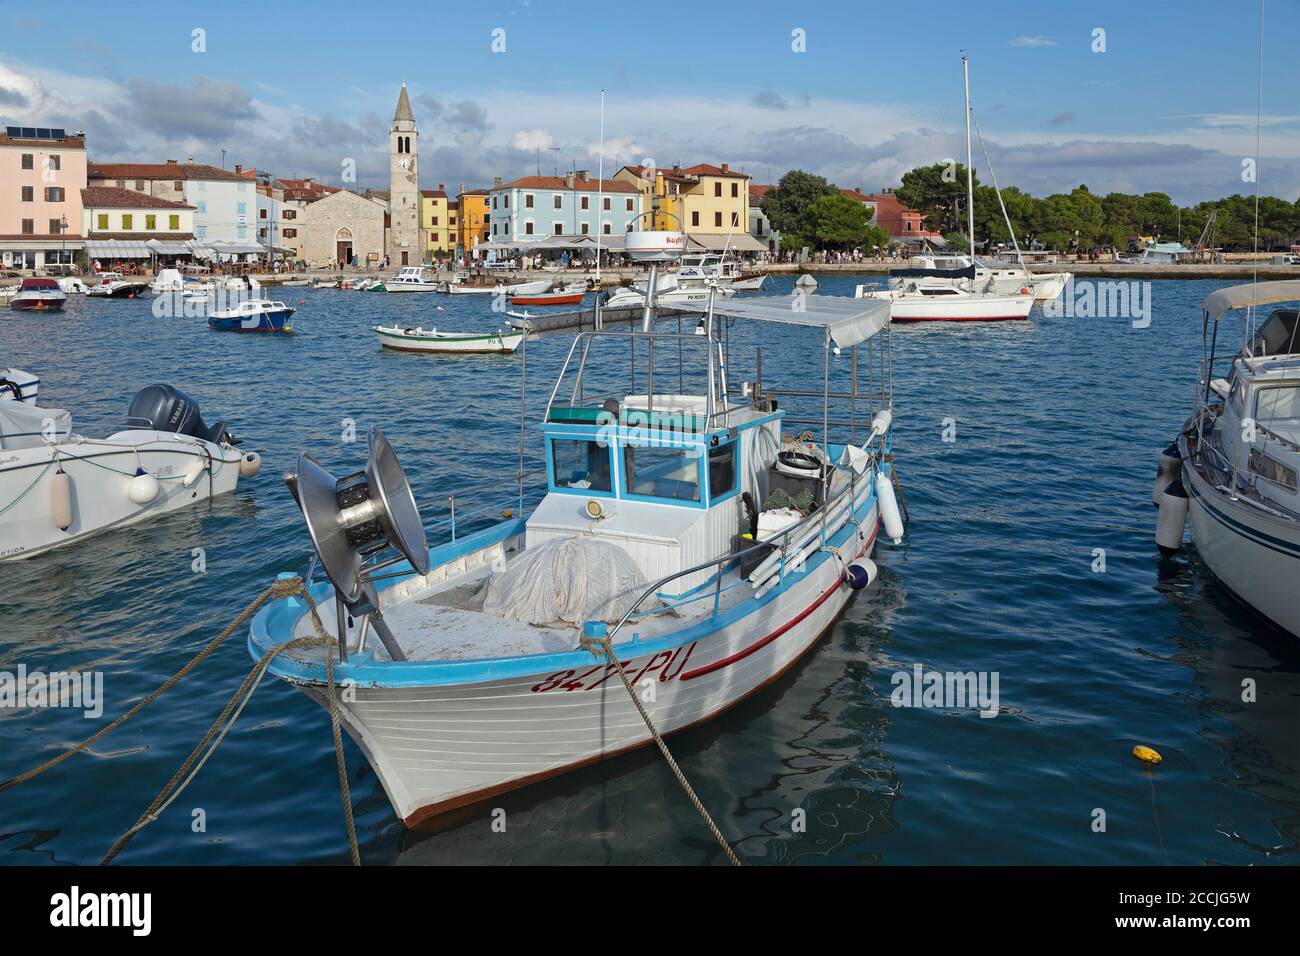 boats at the harbour, Fazana, Istria, Croatia Stock Photo